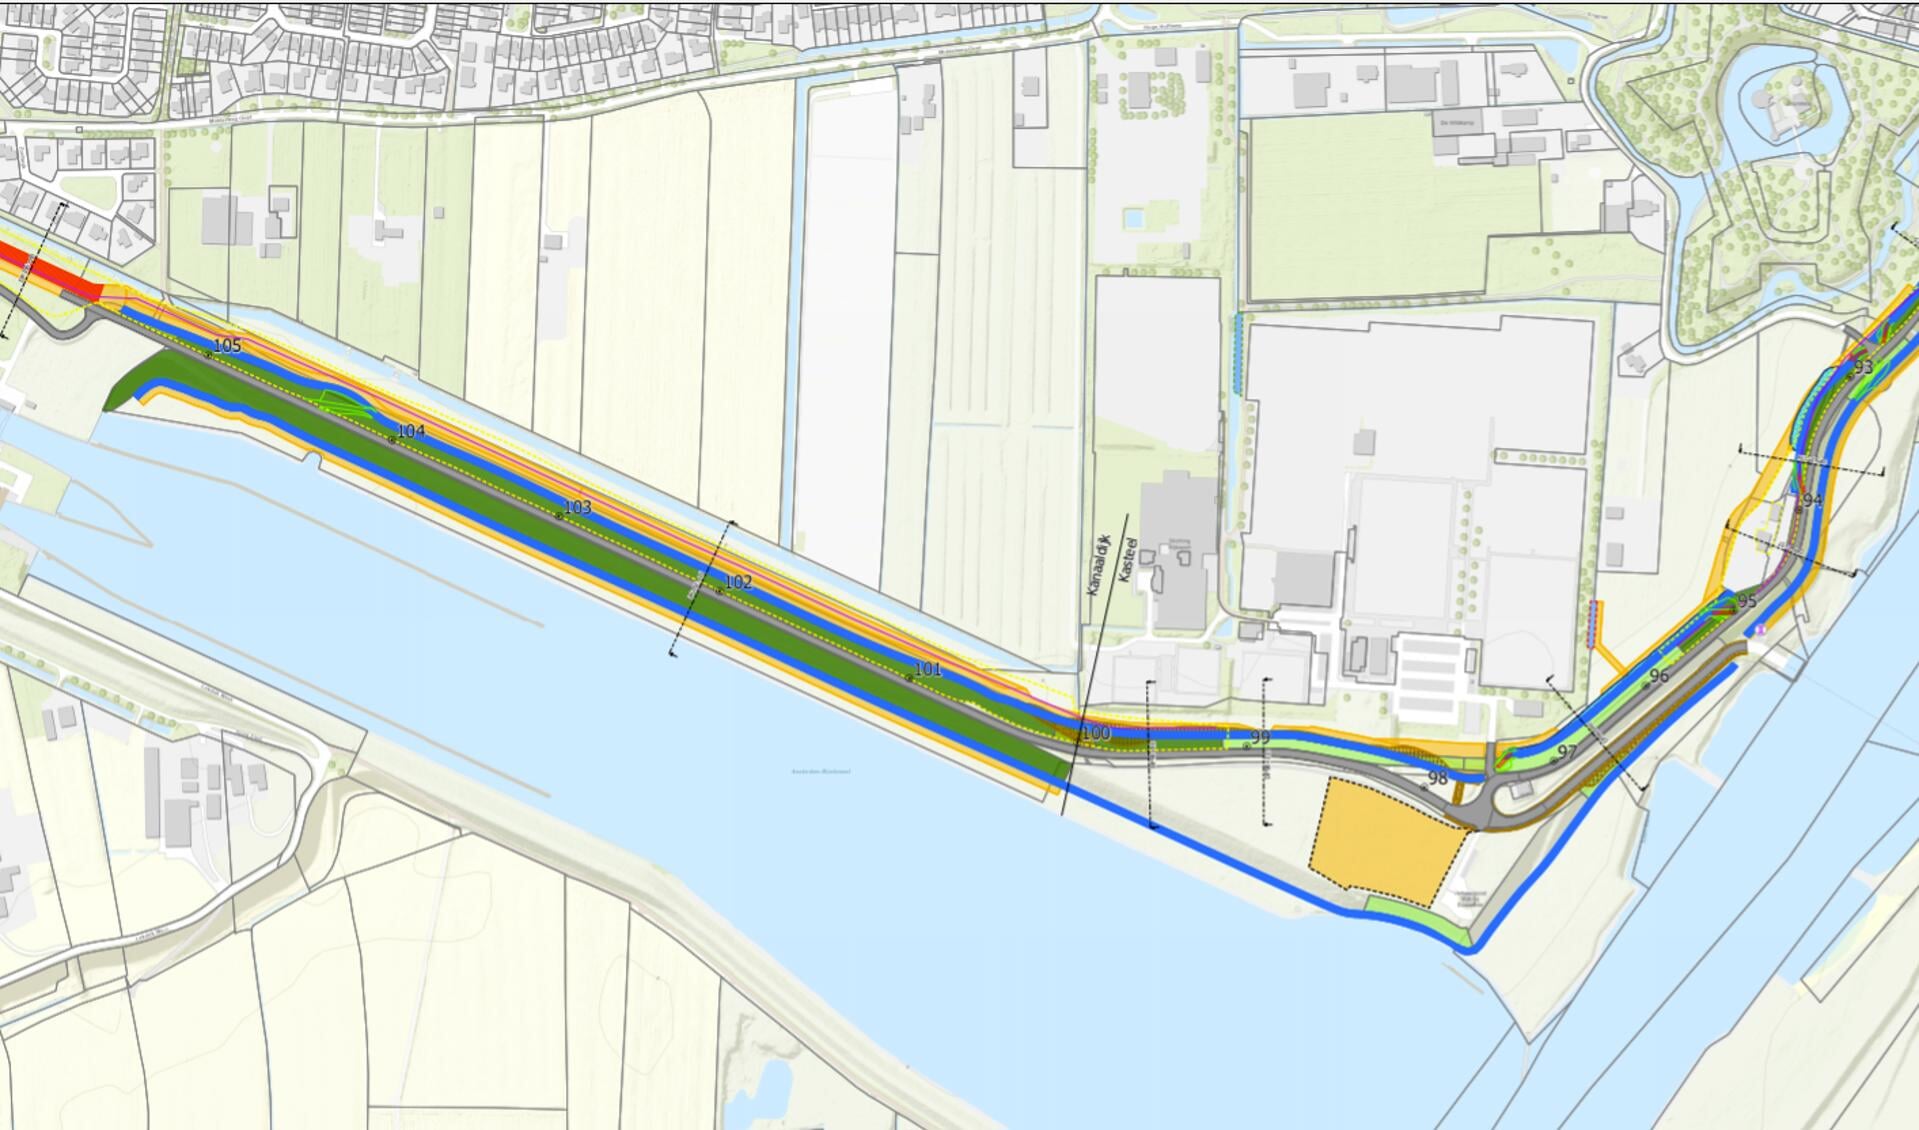 Eén van de plankaarten van het project Sterke Lekdijk die te zien zijn tijdens de informatieavond